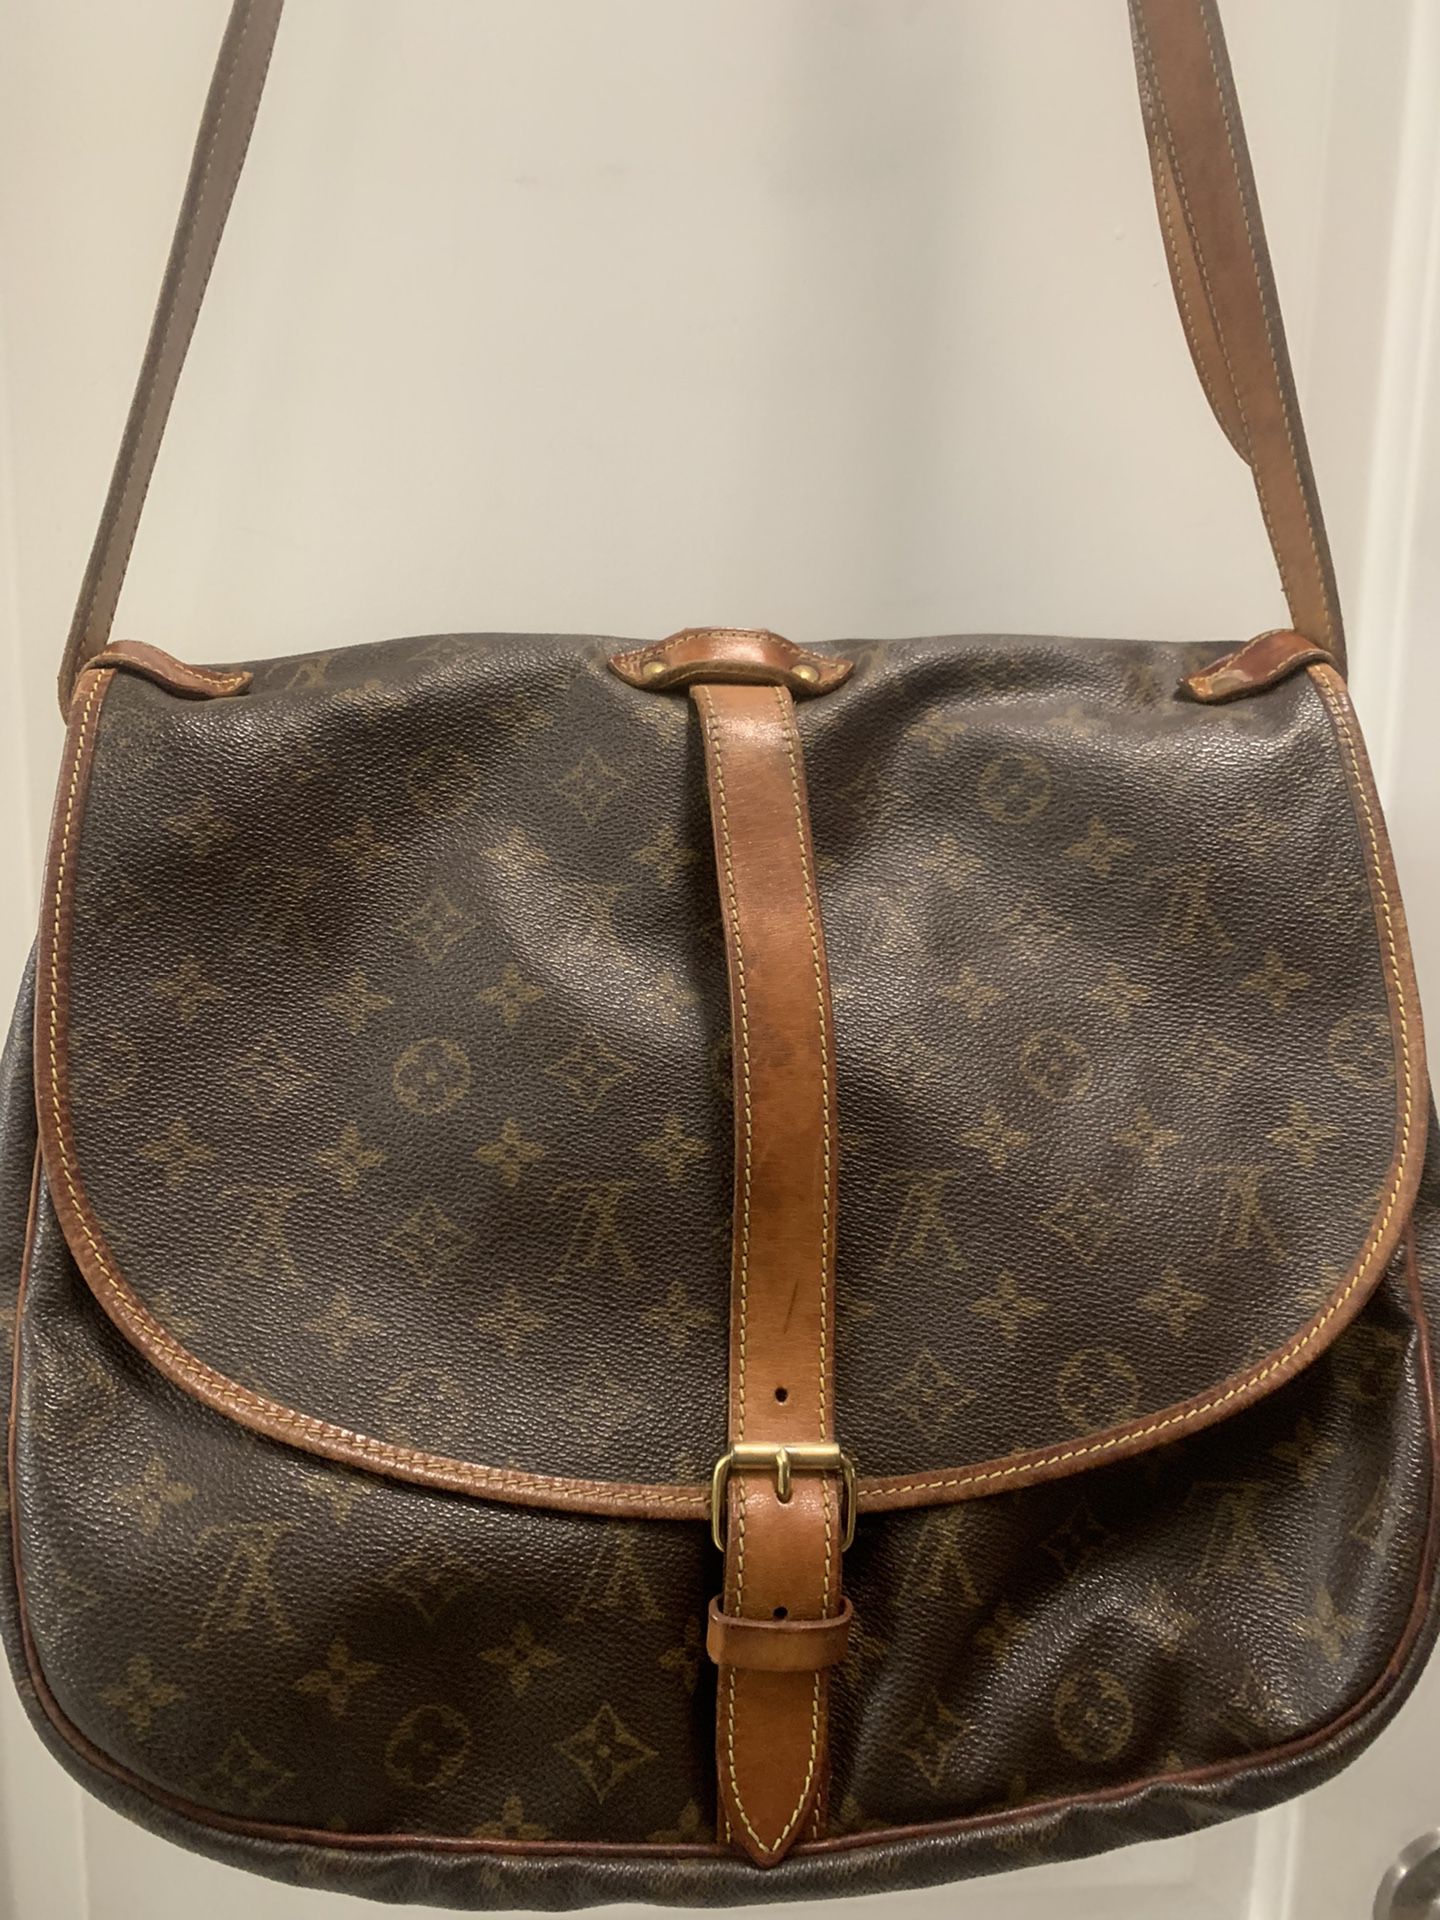 Authentic large Louis Vuitton Saumur 35 crossbody purse bag